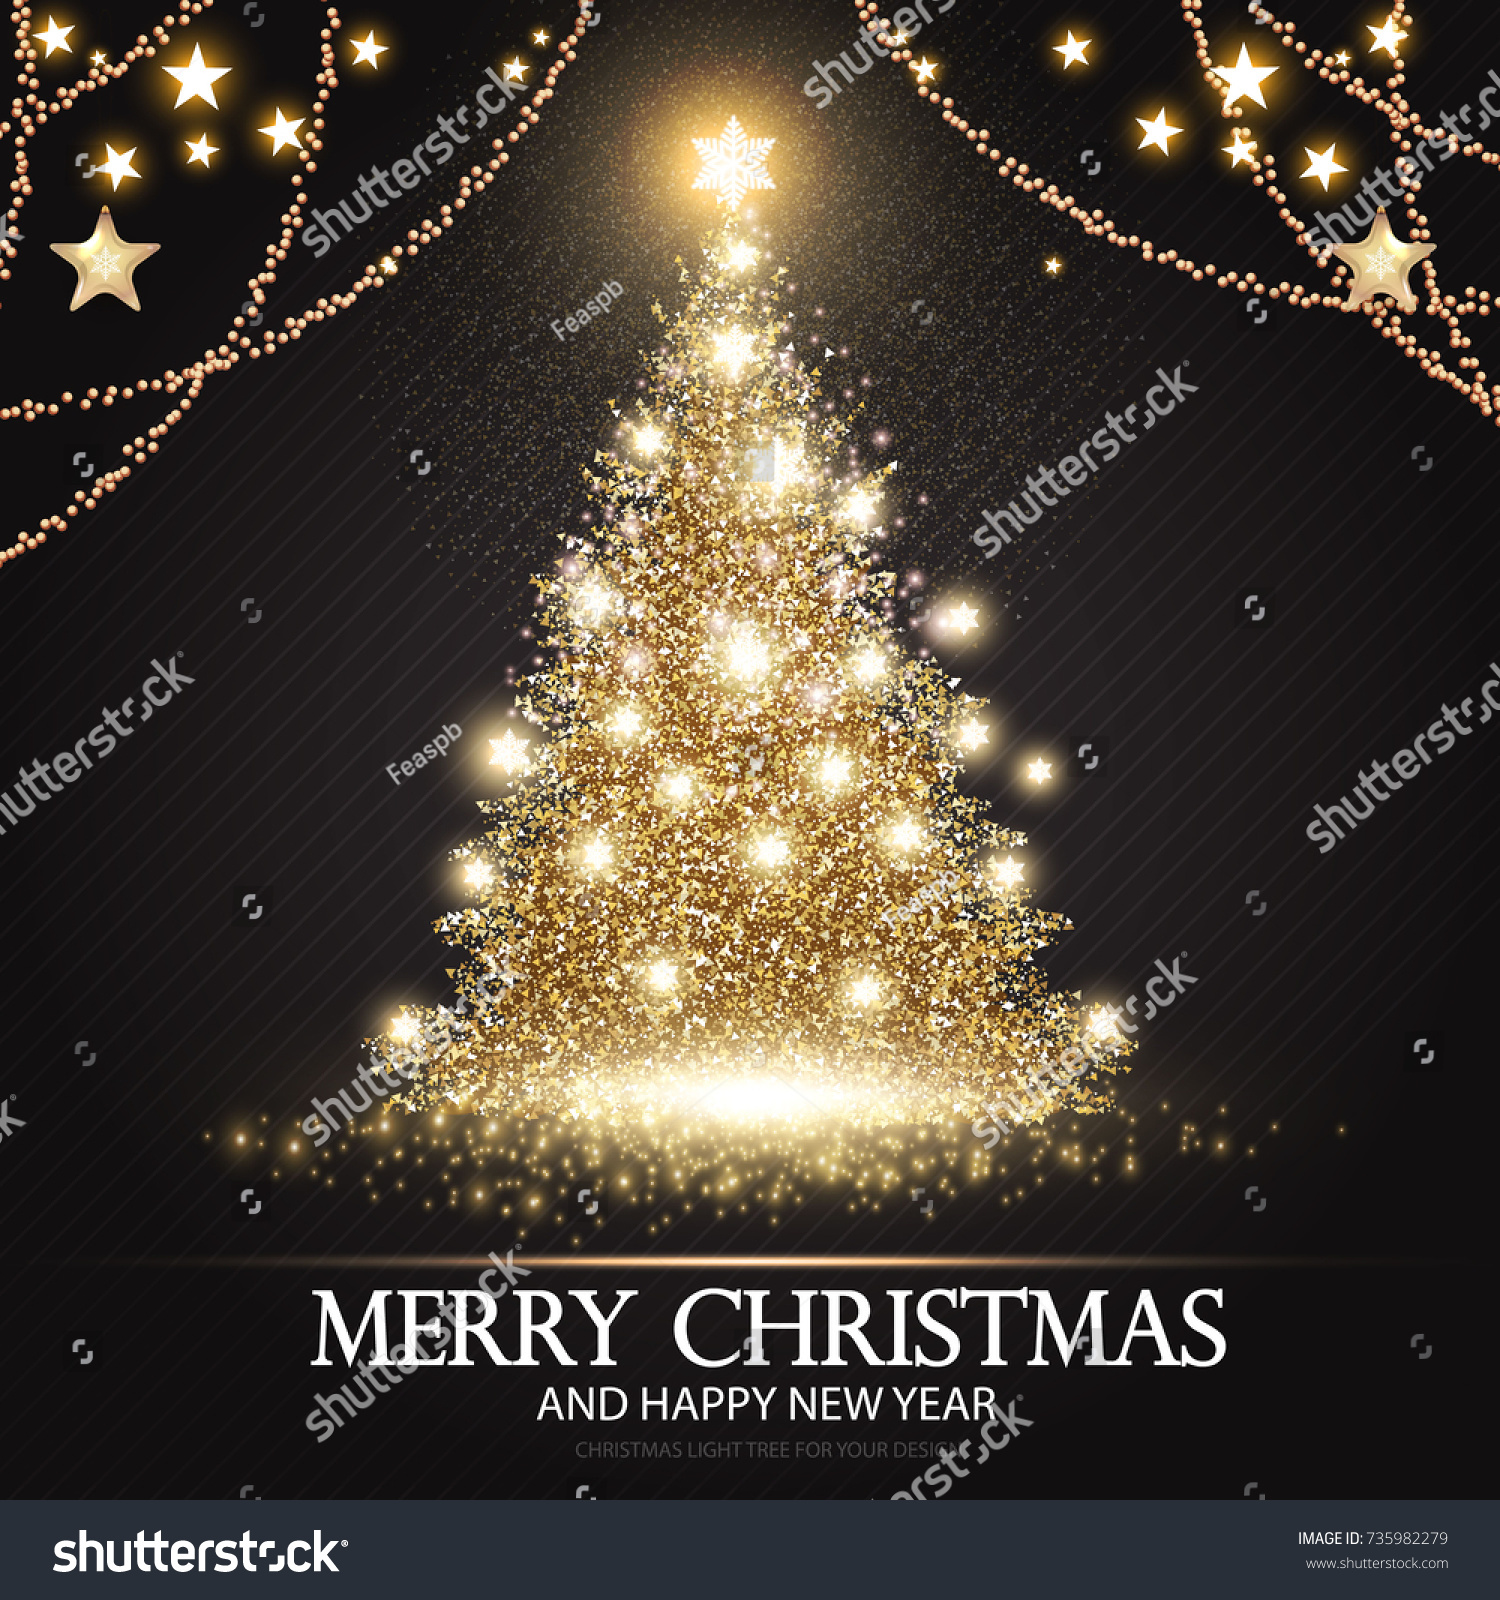 Albero Di Natale Zecchino Doro.Immagine Vettoriale Stock 735982279 A Tema Albero Di Natale Elegante Modello Di Royalty Free